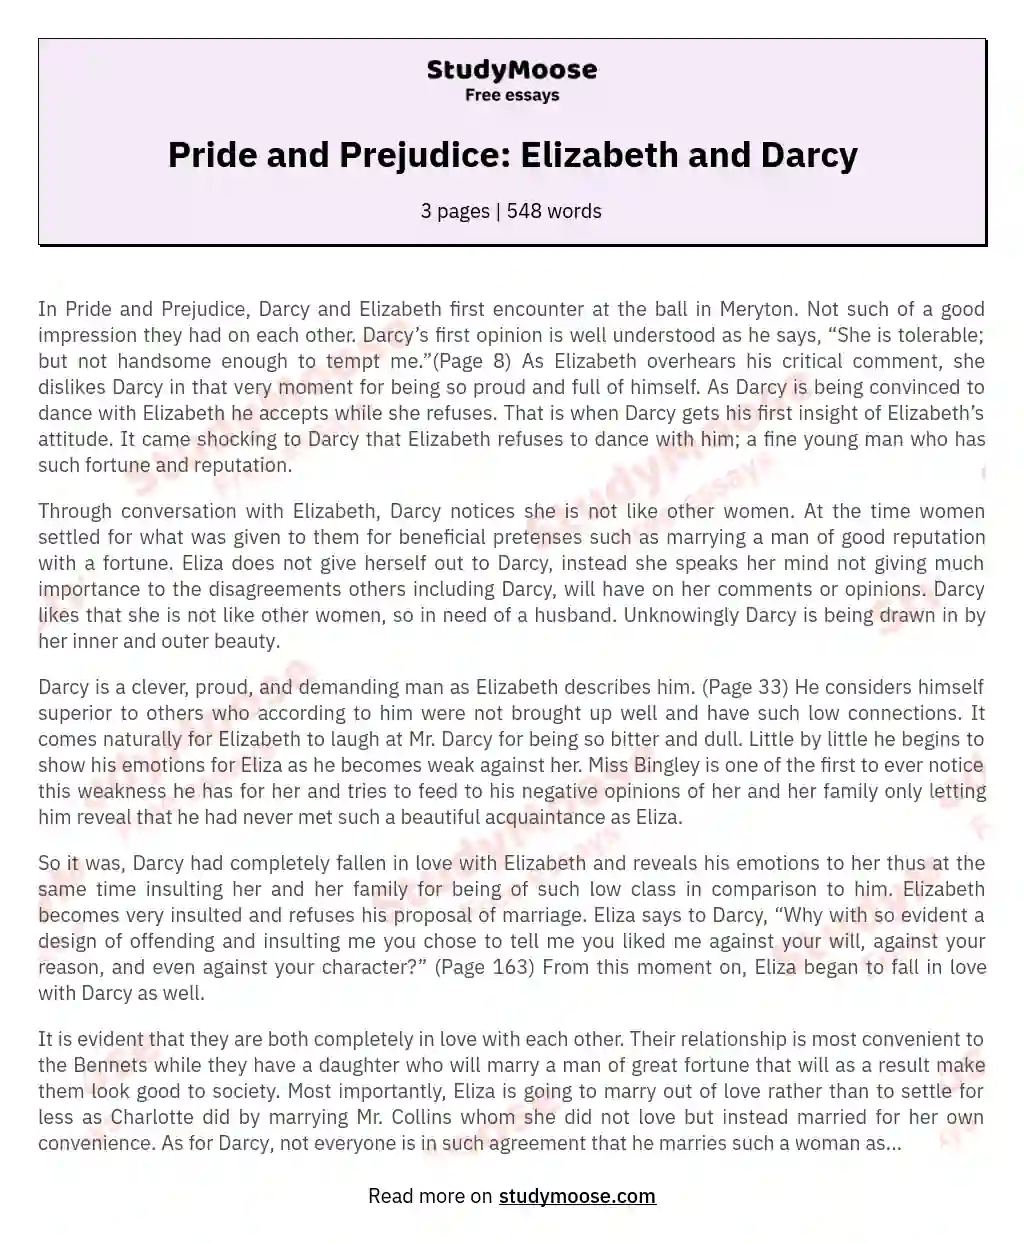 pride and prejudice elizabeth and darcy relationship essay